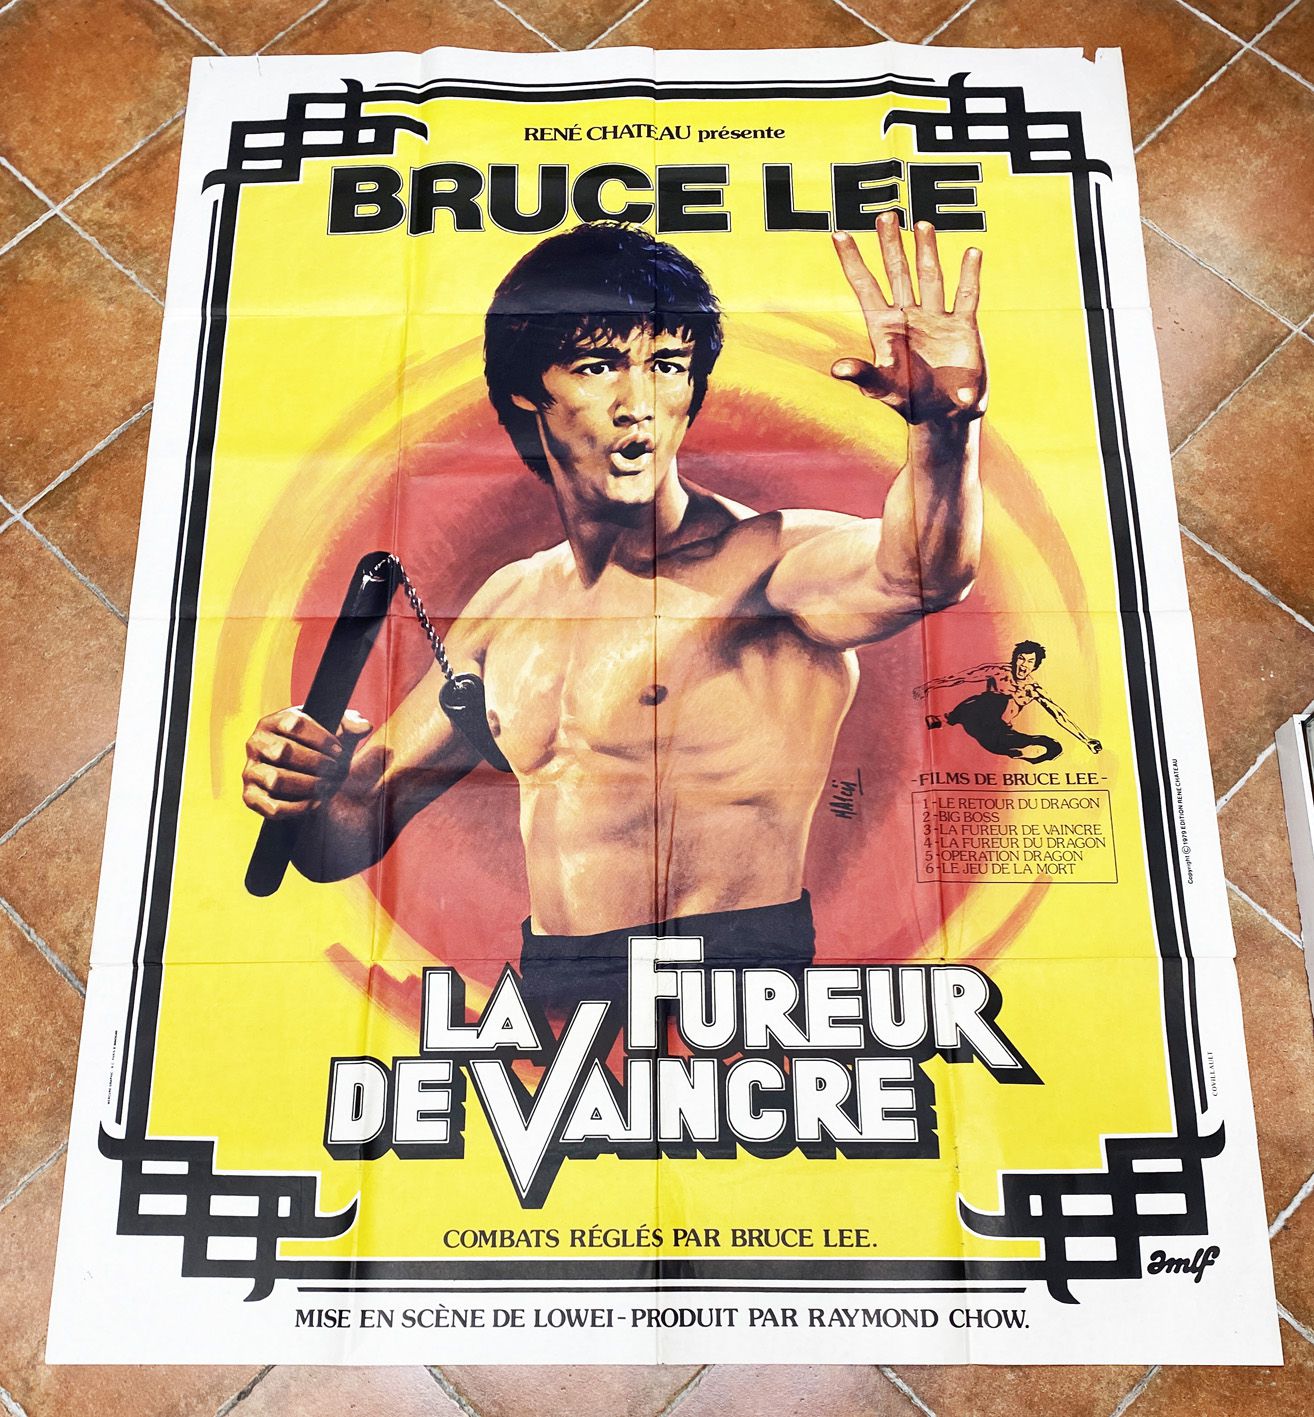 fury movie poster